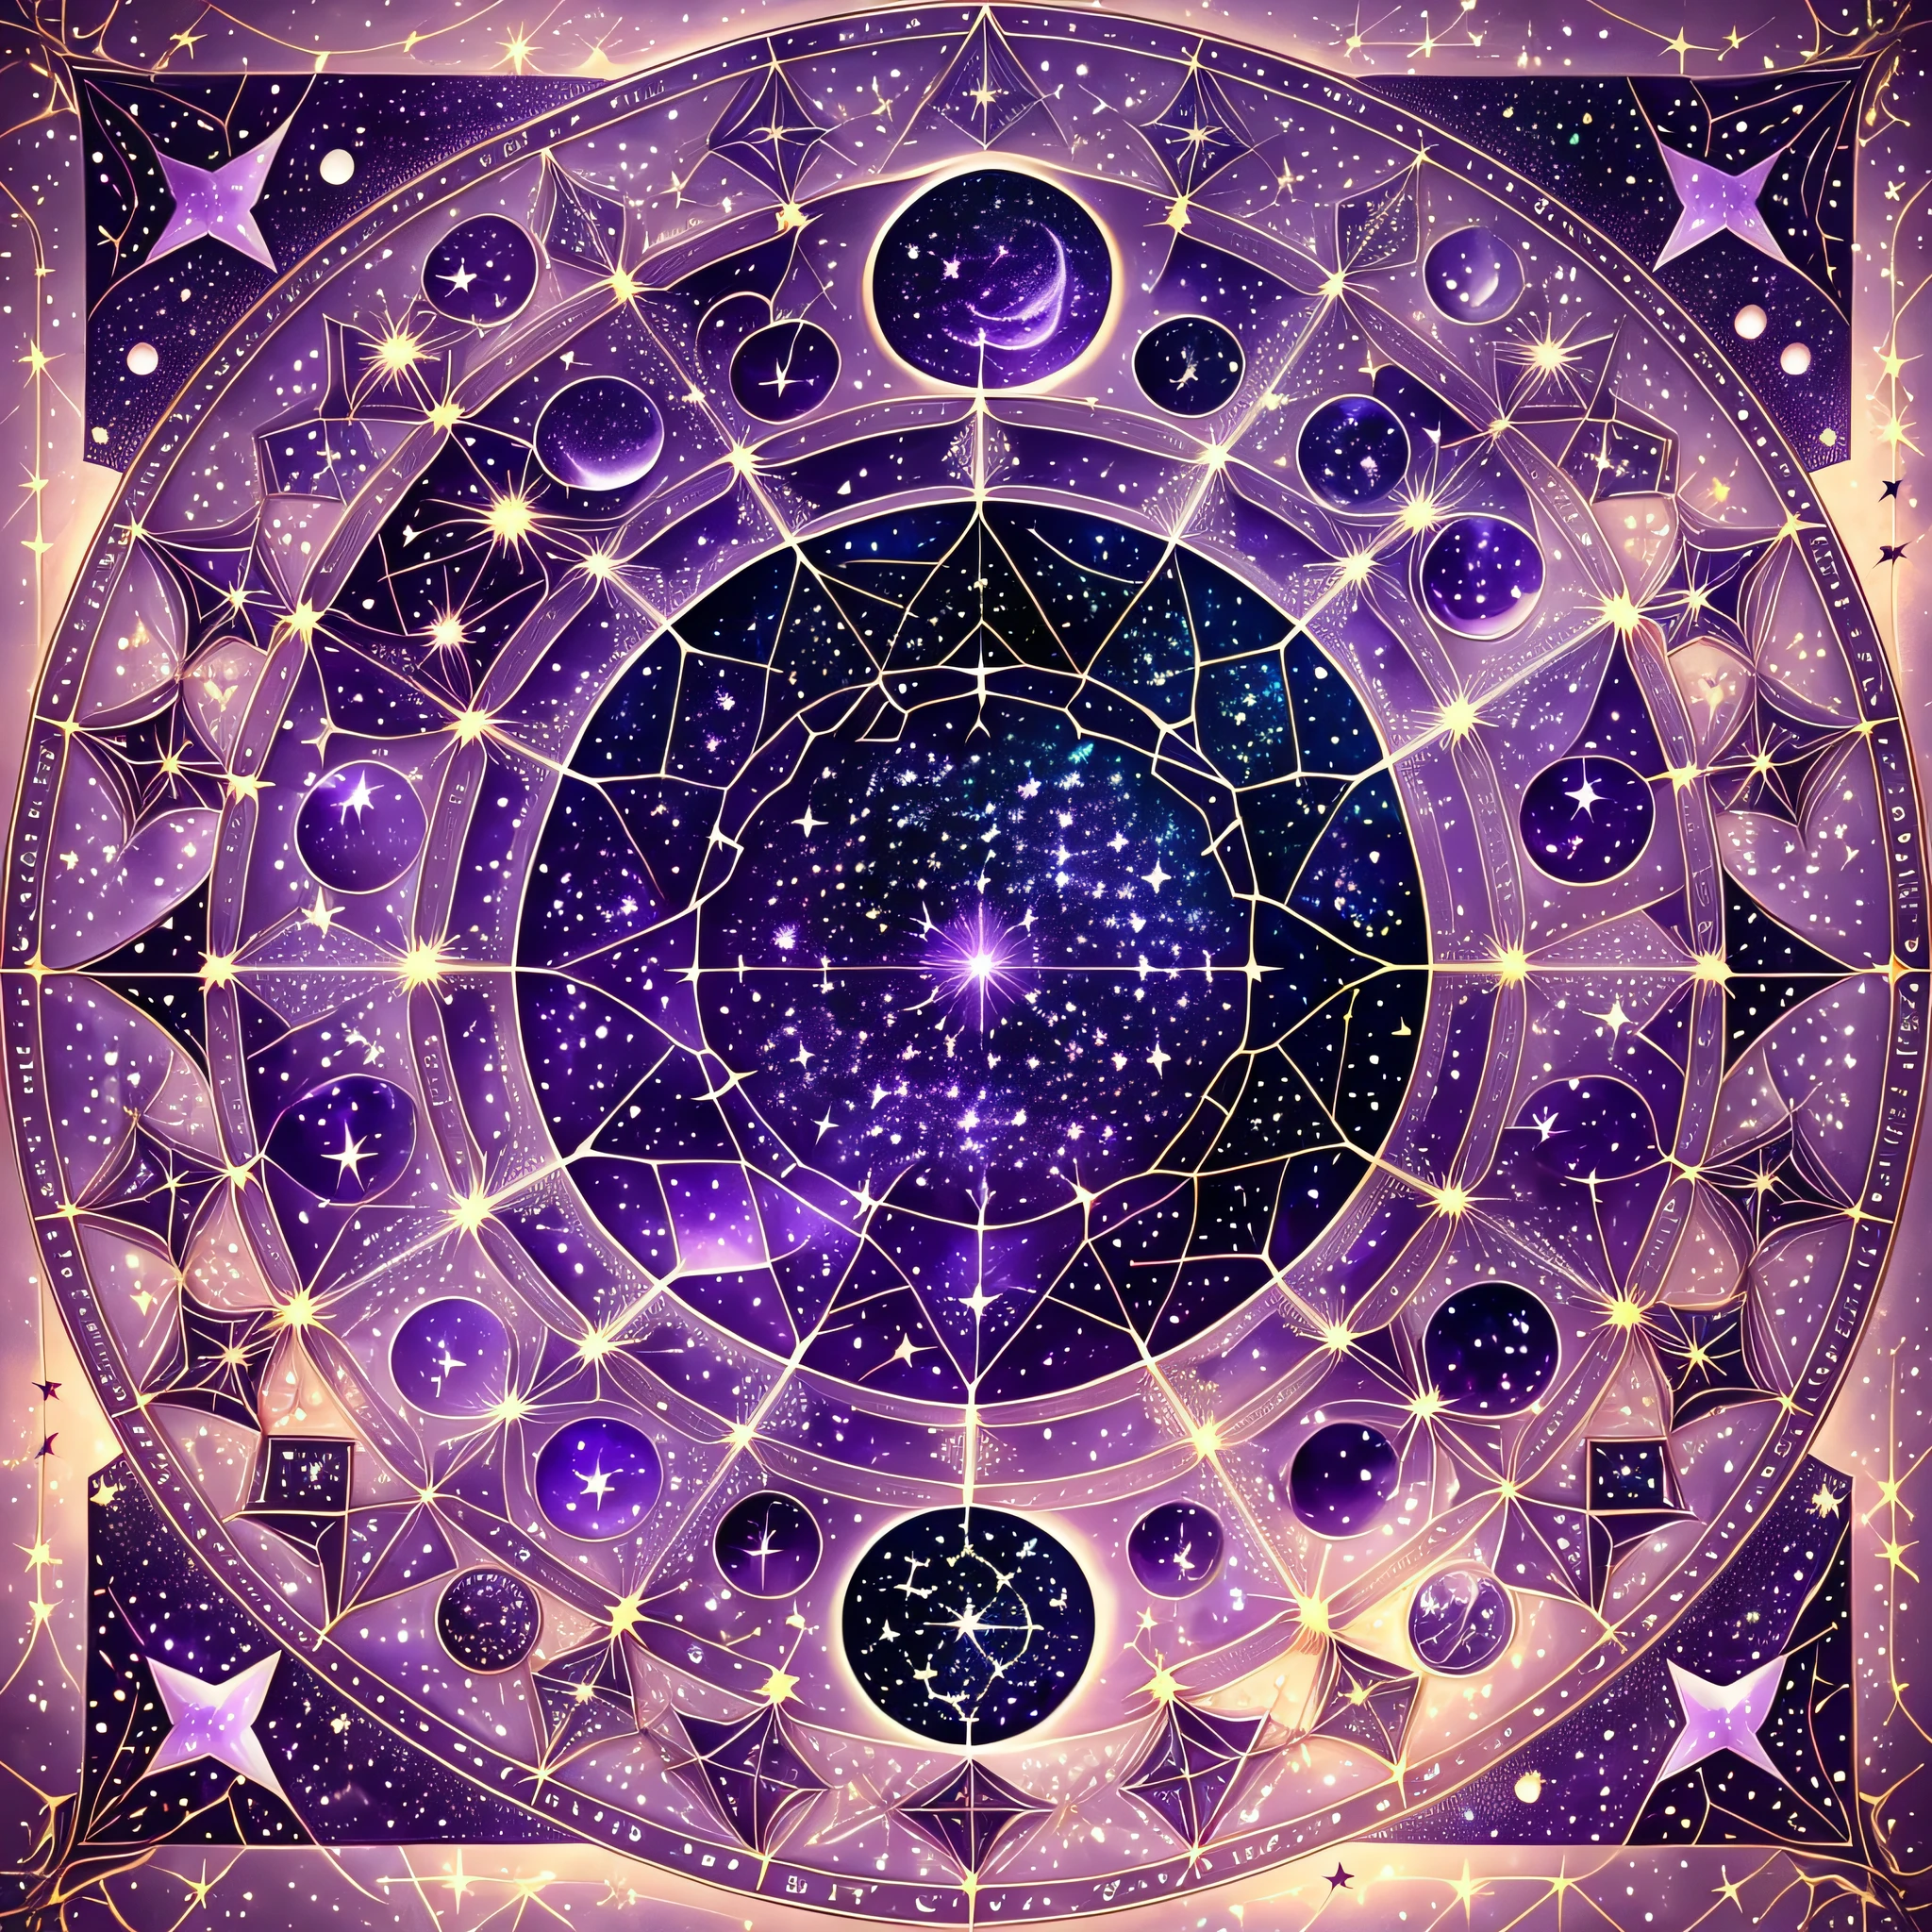 黄道星座, 星空, 紫色色调, 绘制星座, 星云--自动--s2